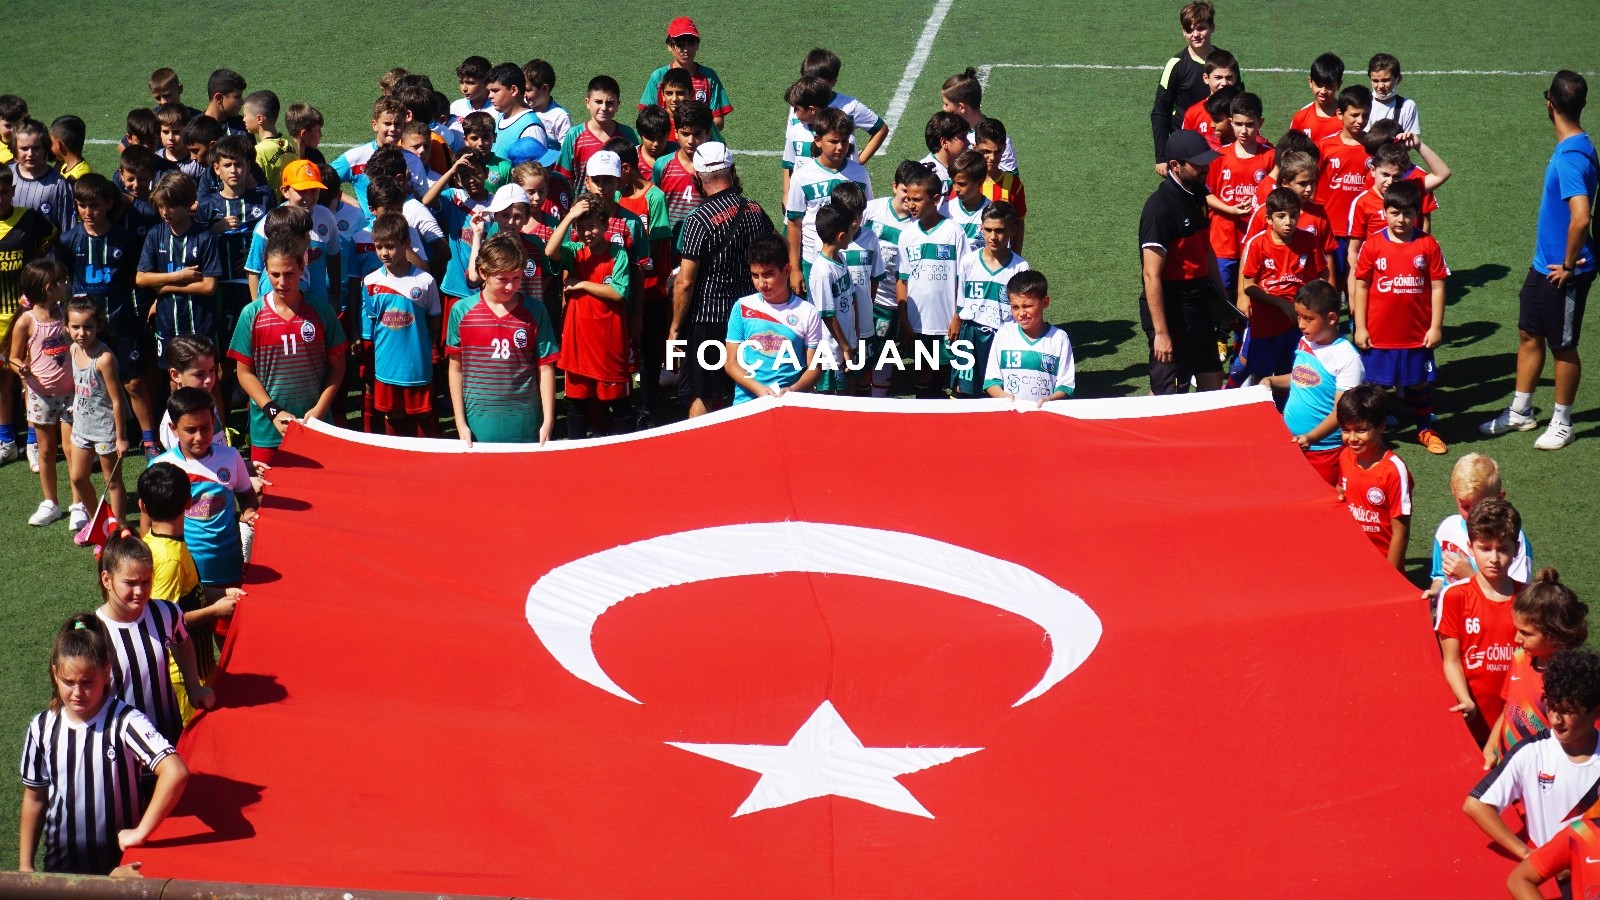 İzmir’de bulunan 10 spor kulübü 30 Ağustos Zafer Kupası Turnuvası için ter döktü